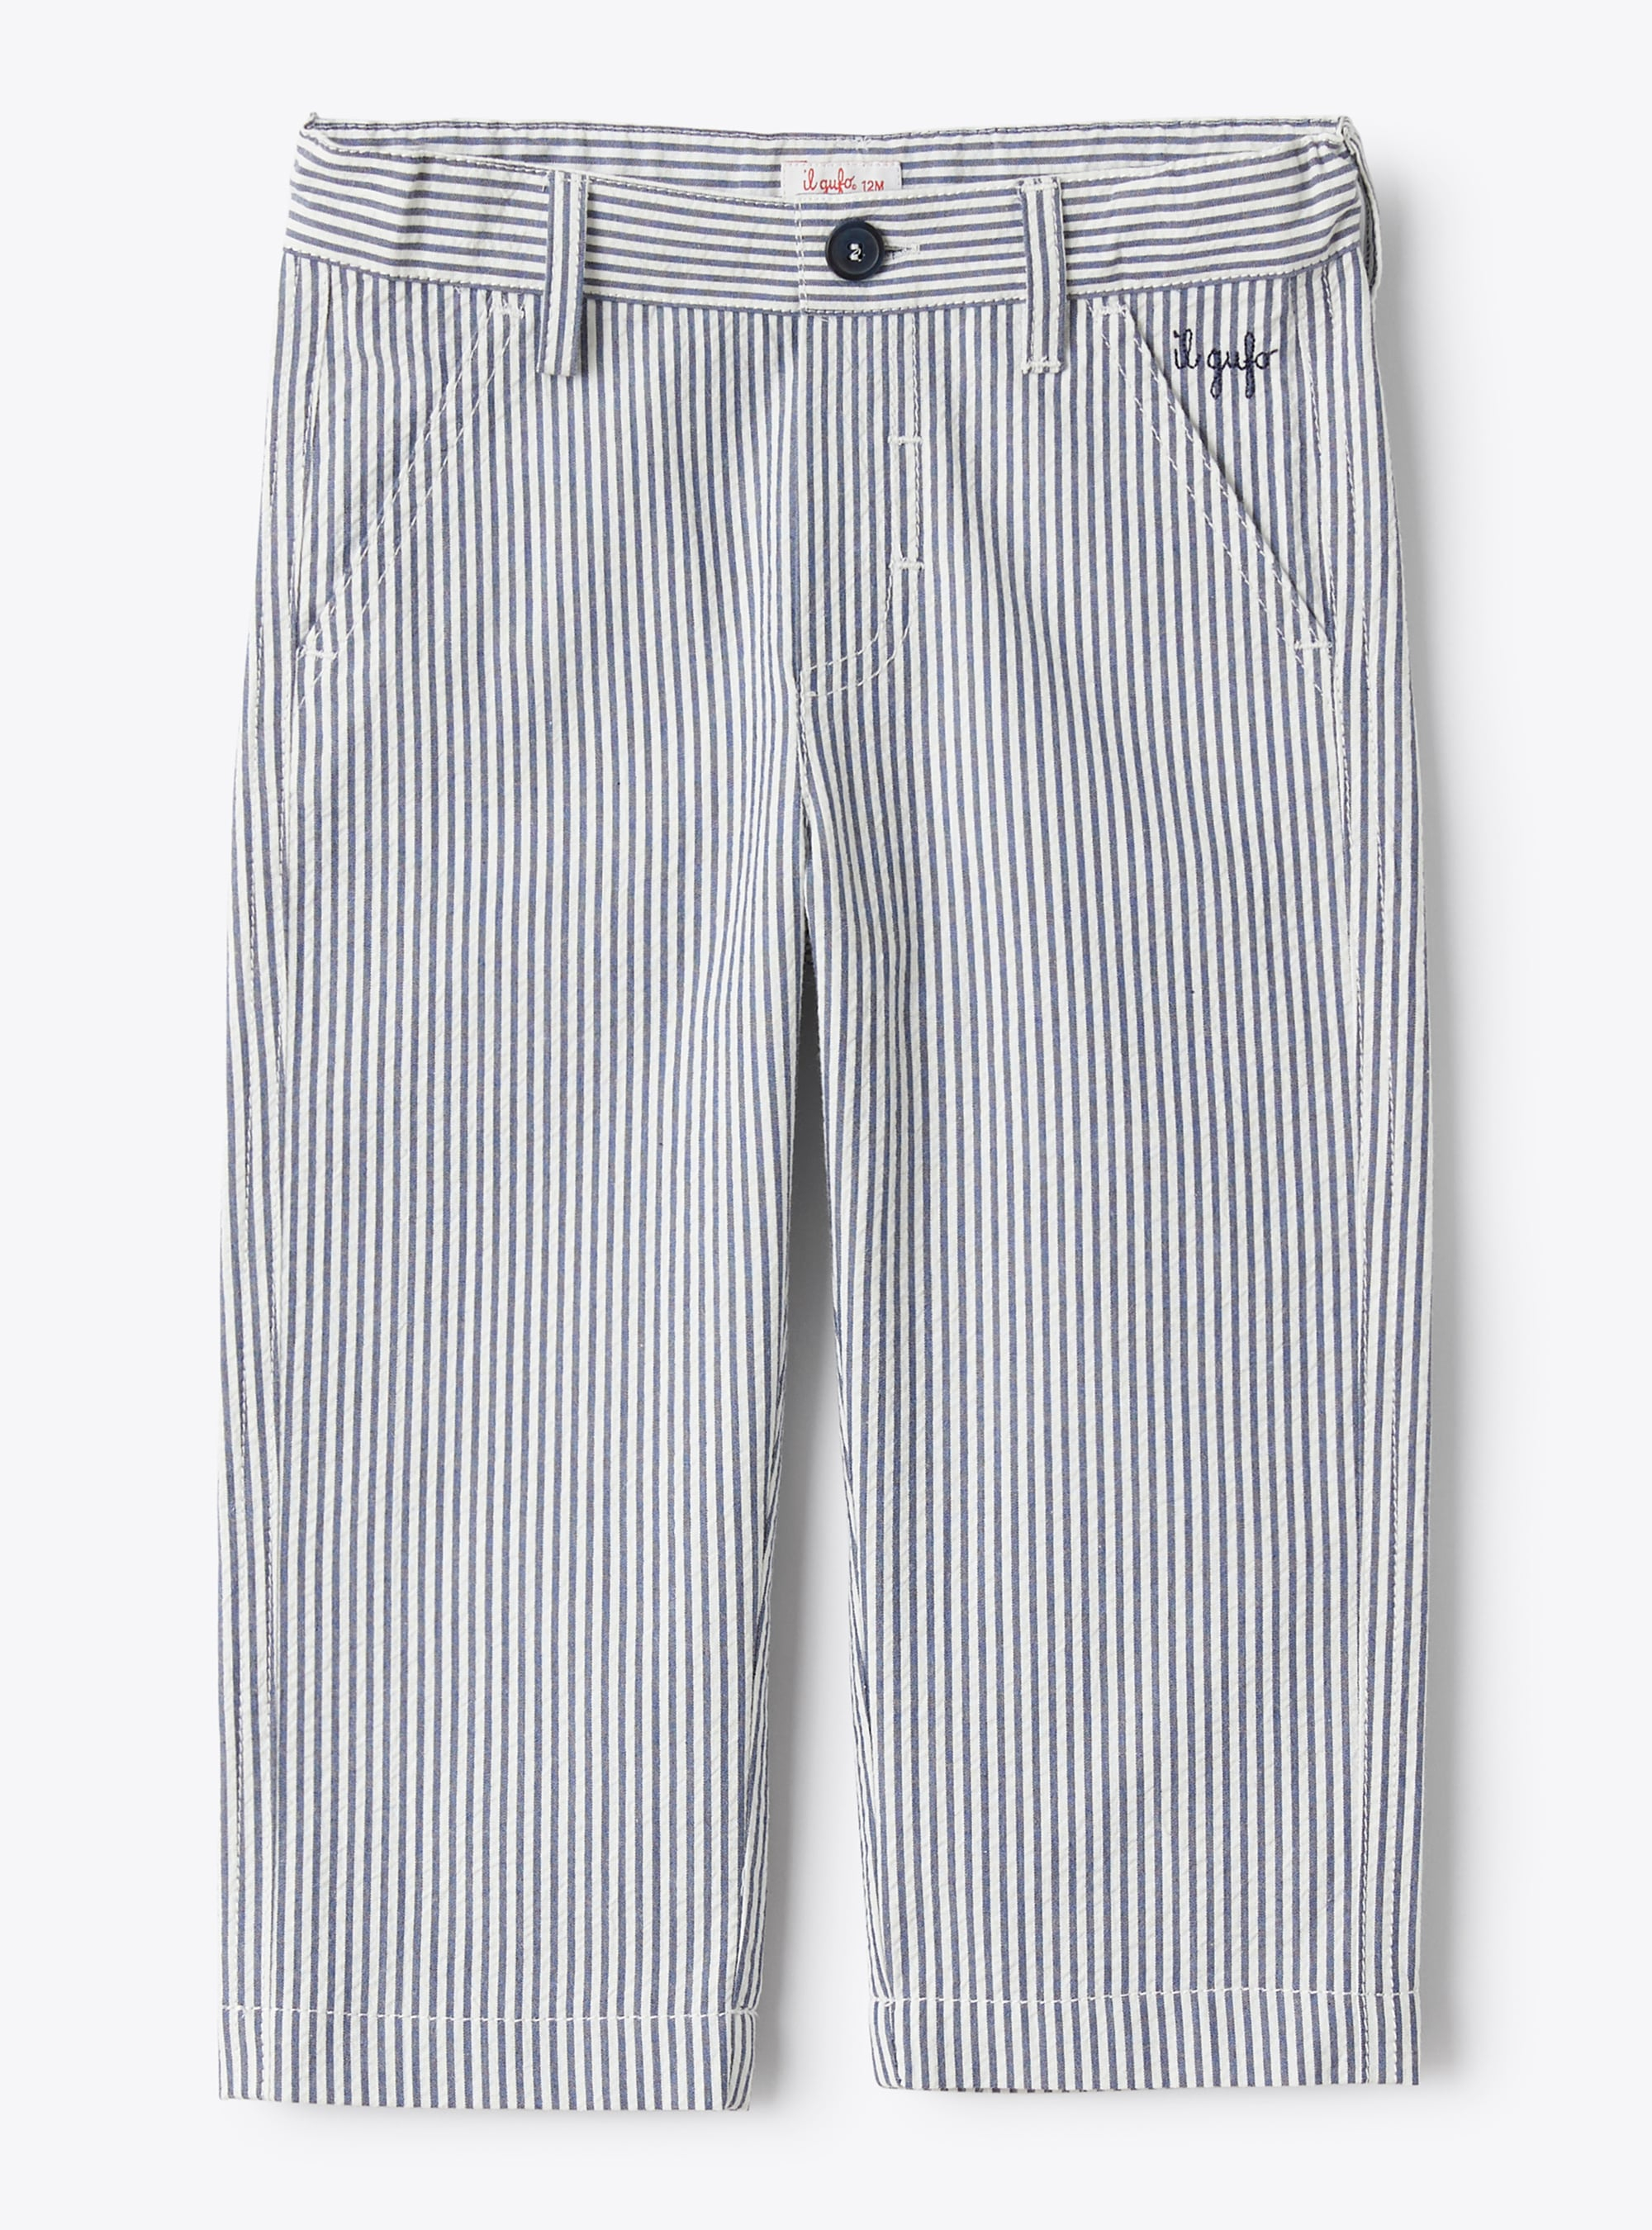 Pantalon pour bébé garçon en seersucker à rayures bleues et blanches - Pantalons - Il Gufo